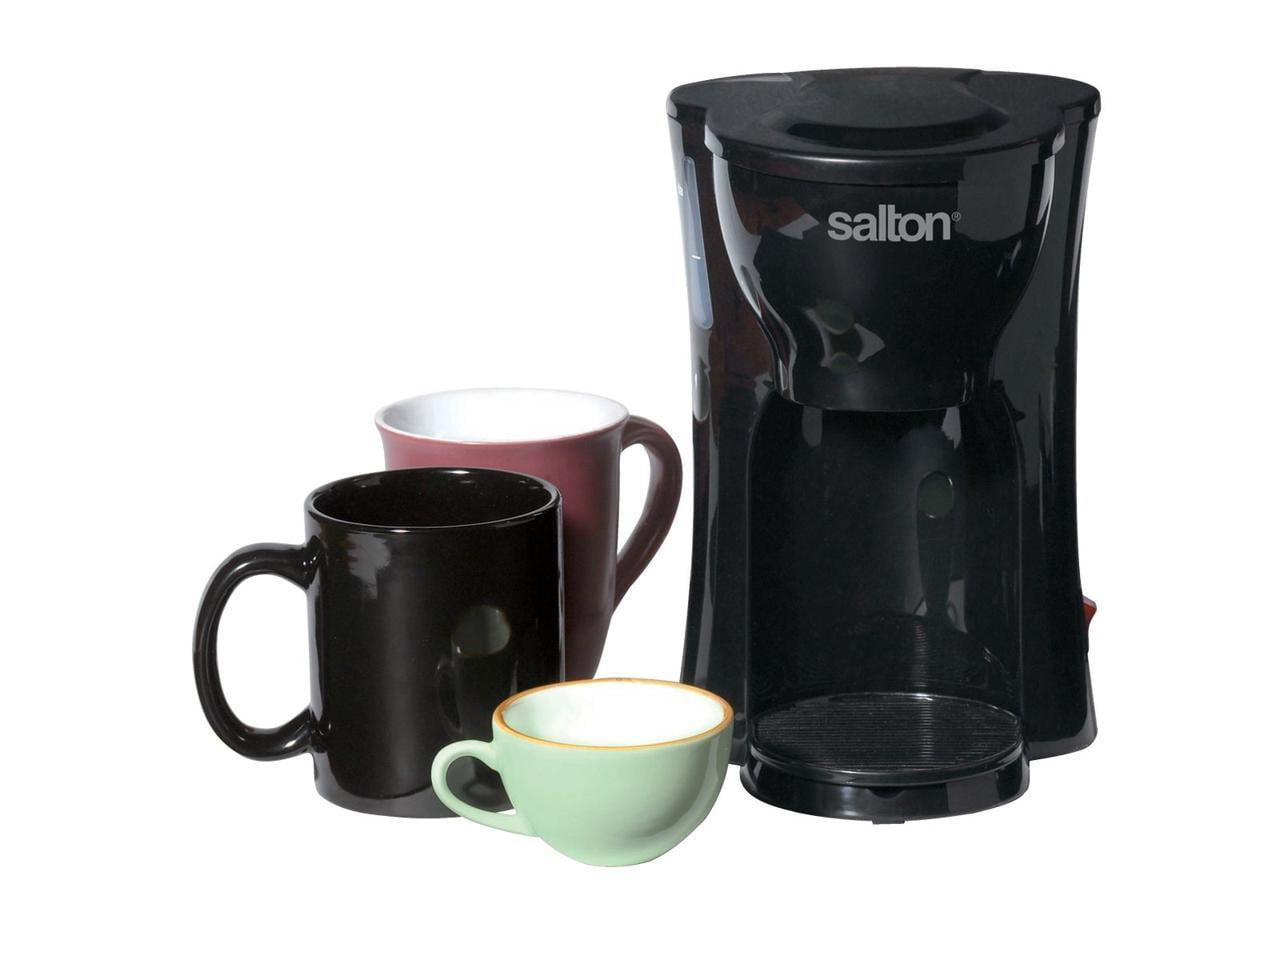 Salton Split Decision Model DS16 - Dual Pot 16 Cup Coffee Maker